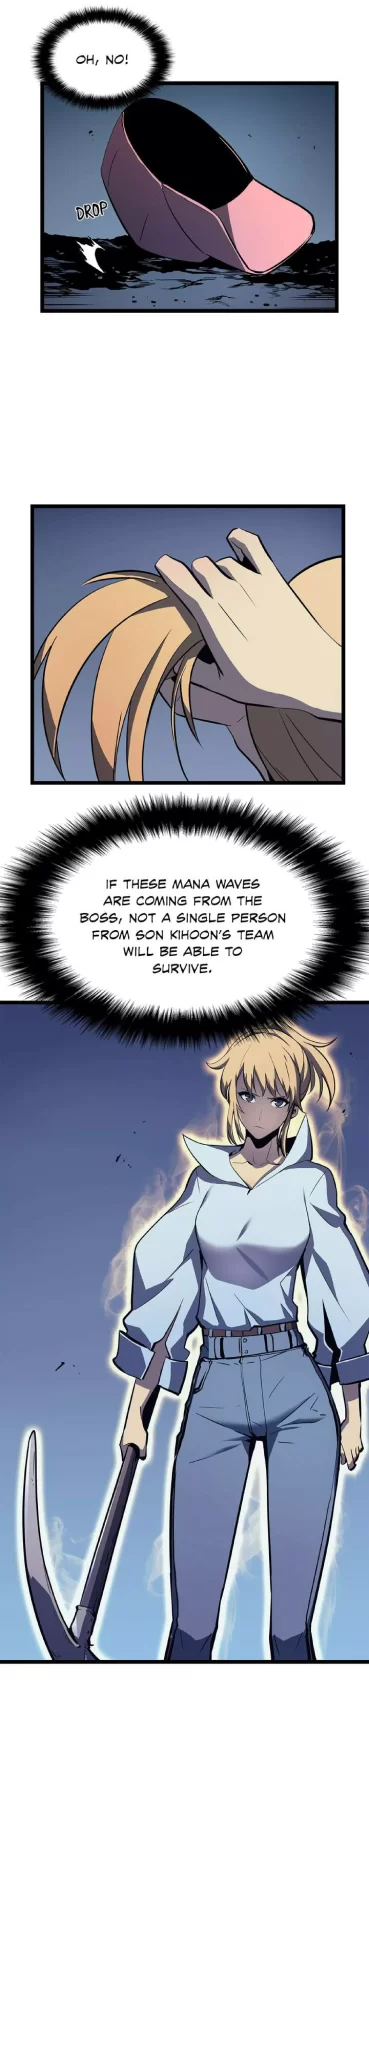 Solo Leveling Manga Manga Chapter - 73 - image 11